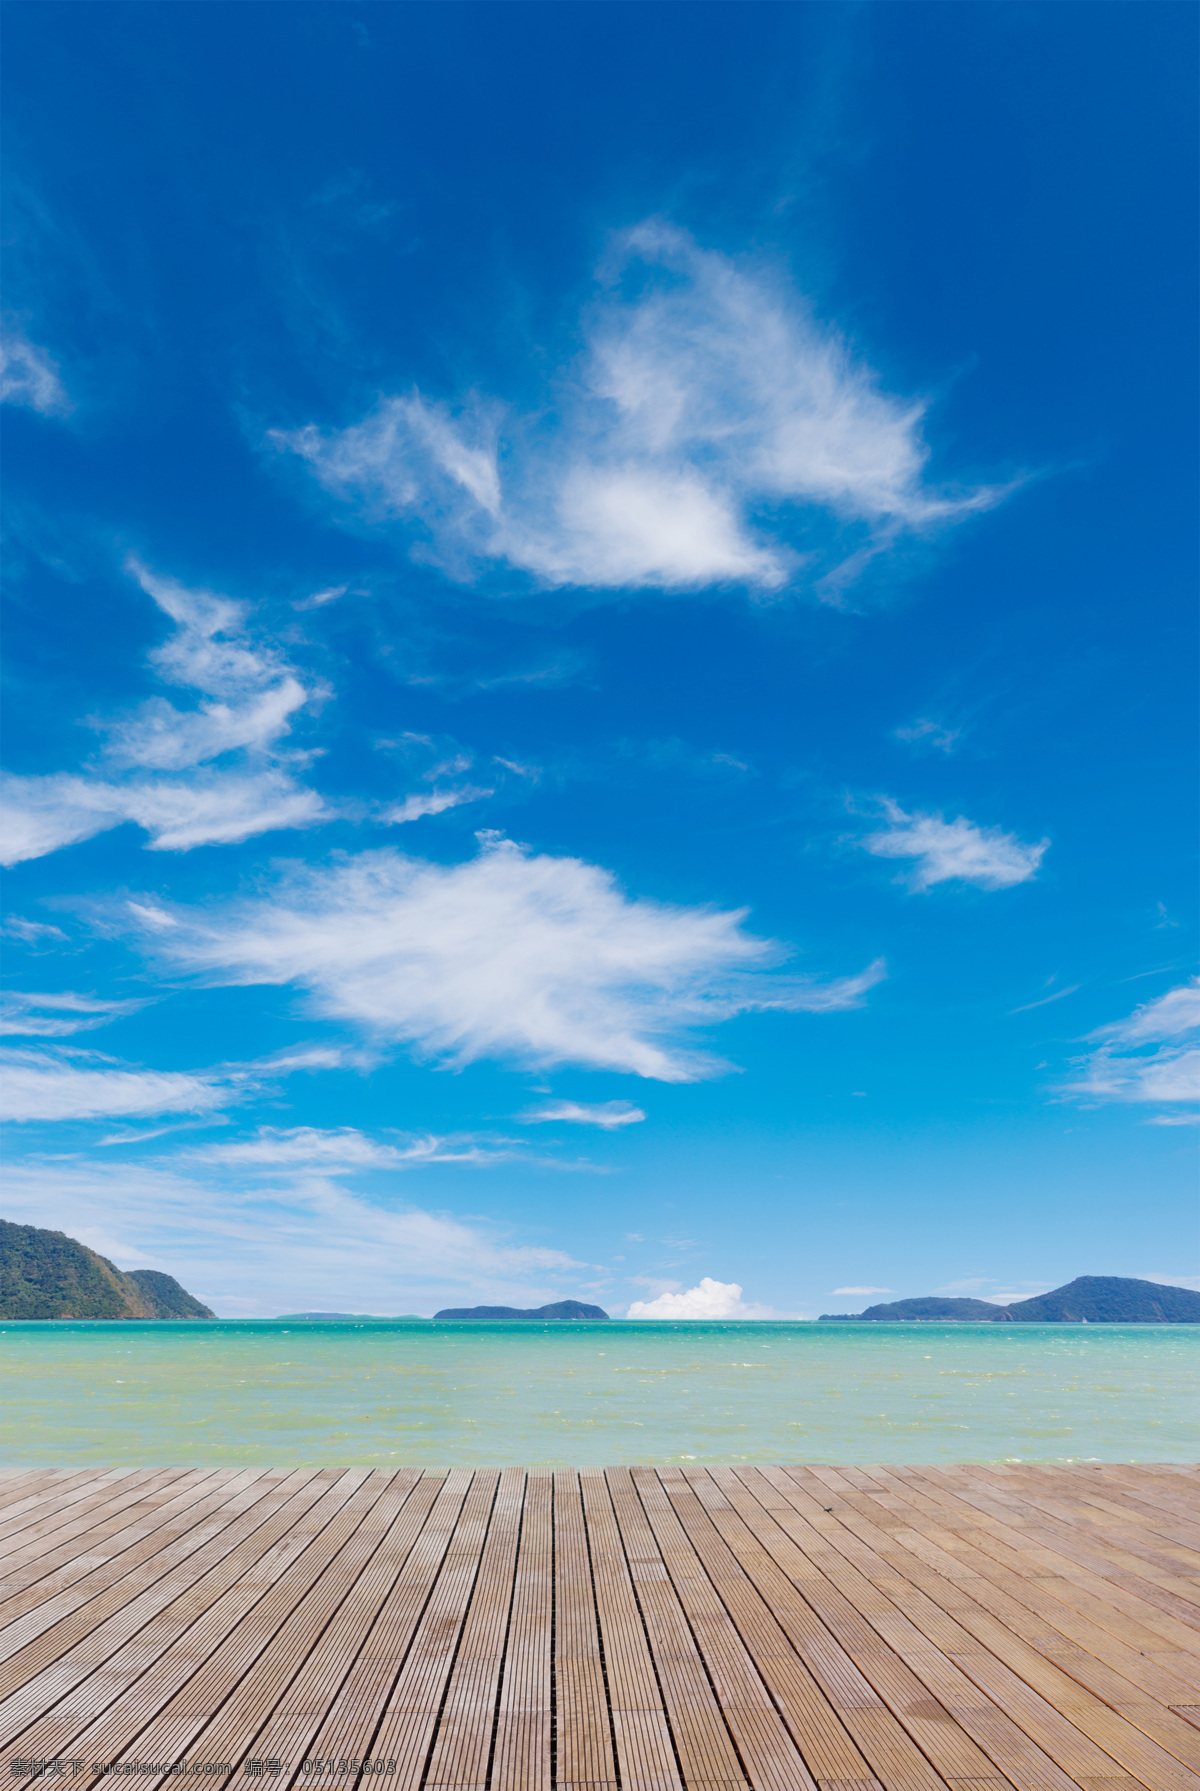 海边 美丽 风景 边风景 海边发光 自然风光 自然景色 沙滩 木板 旅游度假 自然风景 自然景观 蓝色